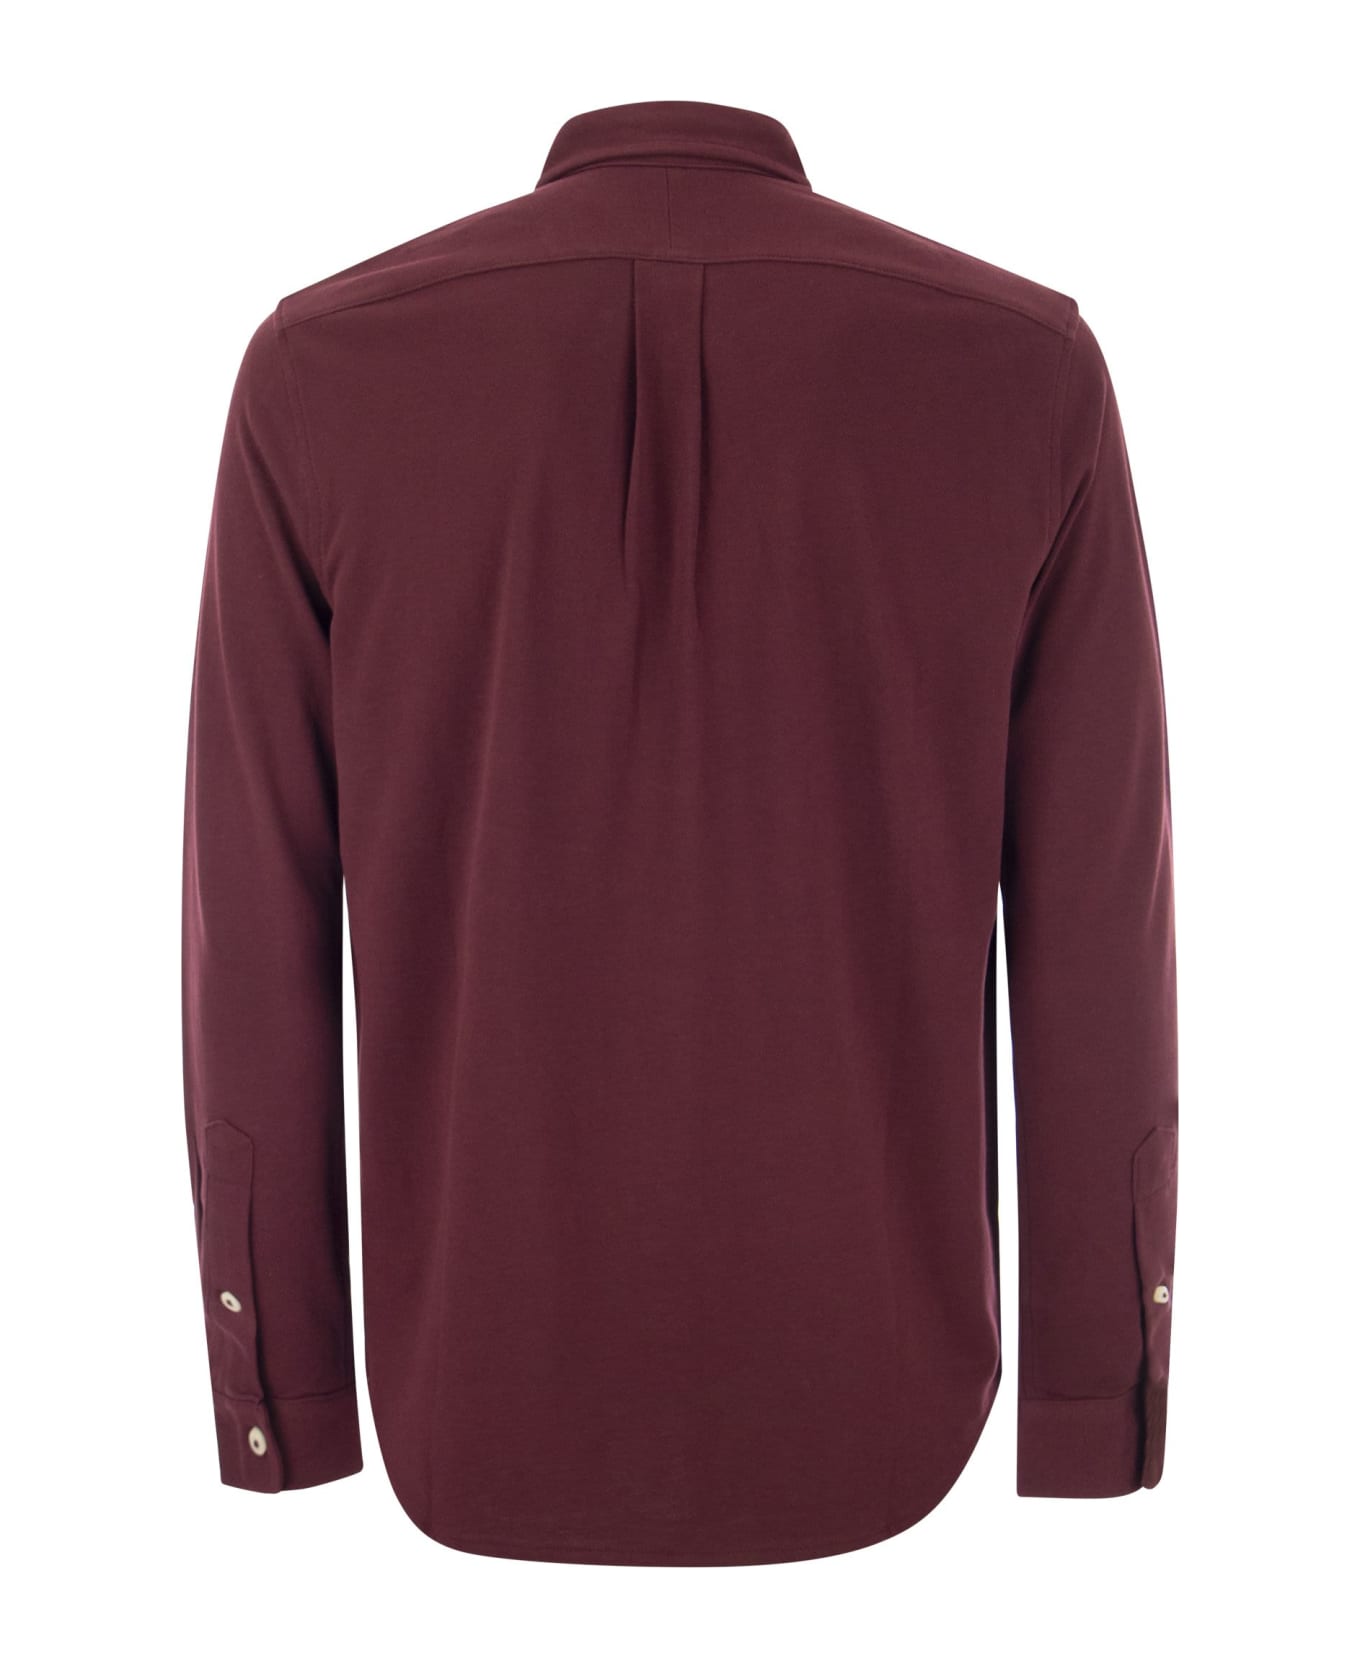 Polo Ralph Lauren Ultralight Pique Shirt - Bordeaux